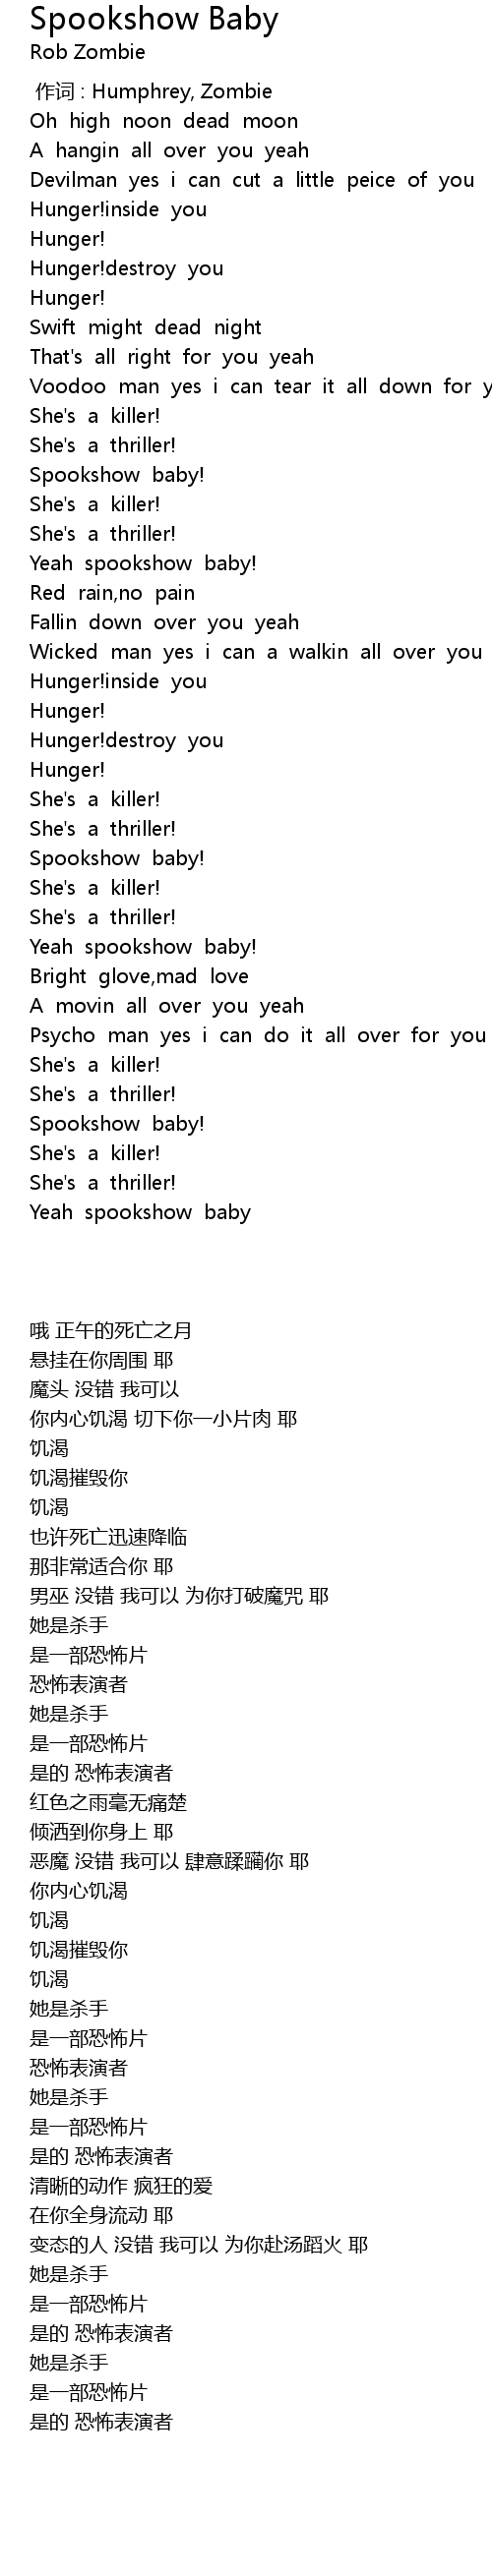 spookshow baby lyrics